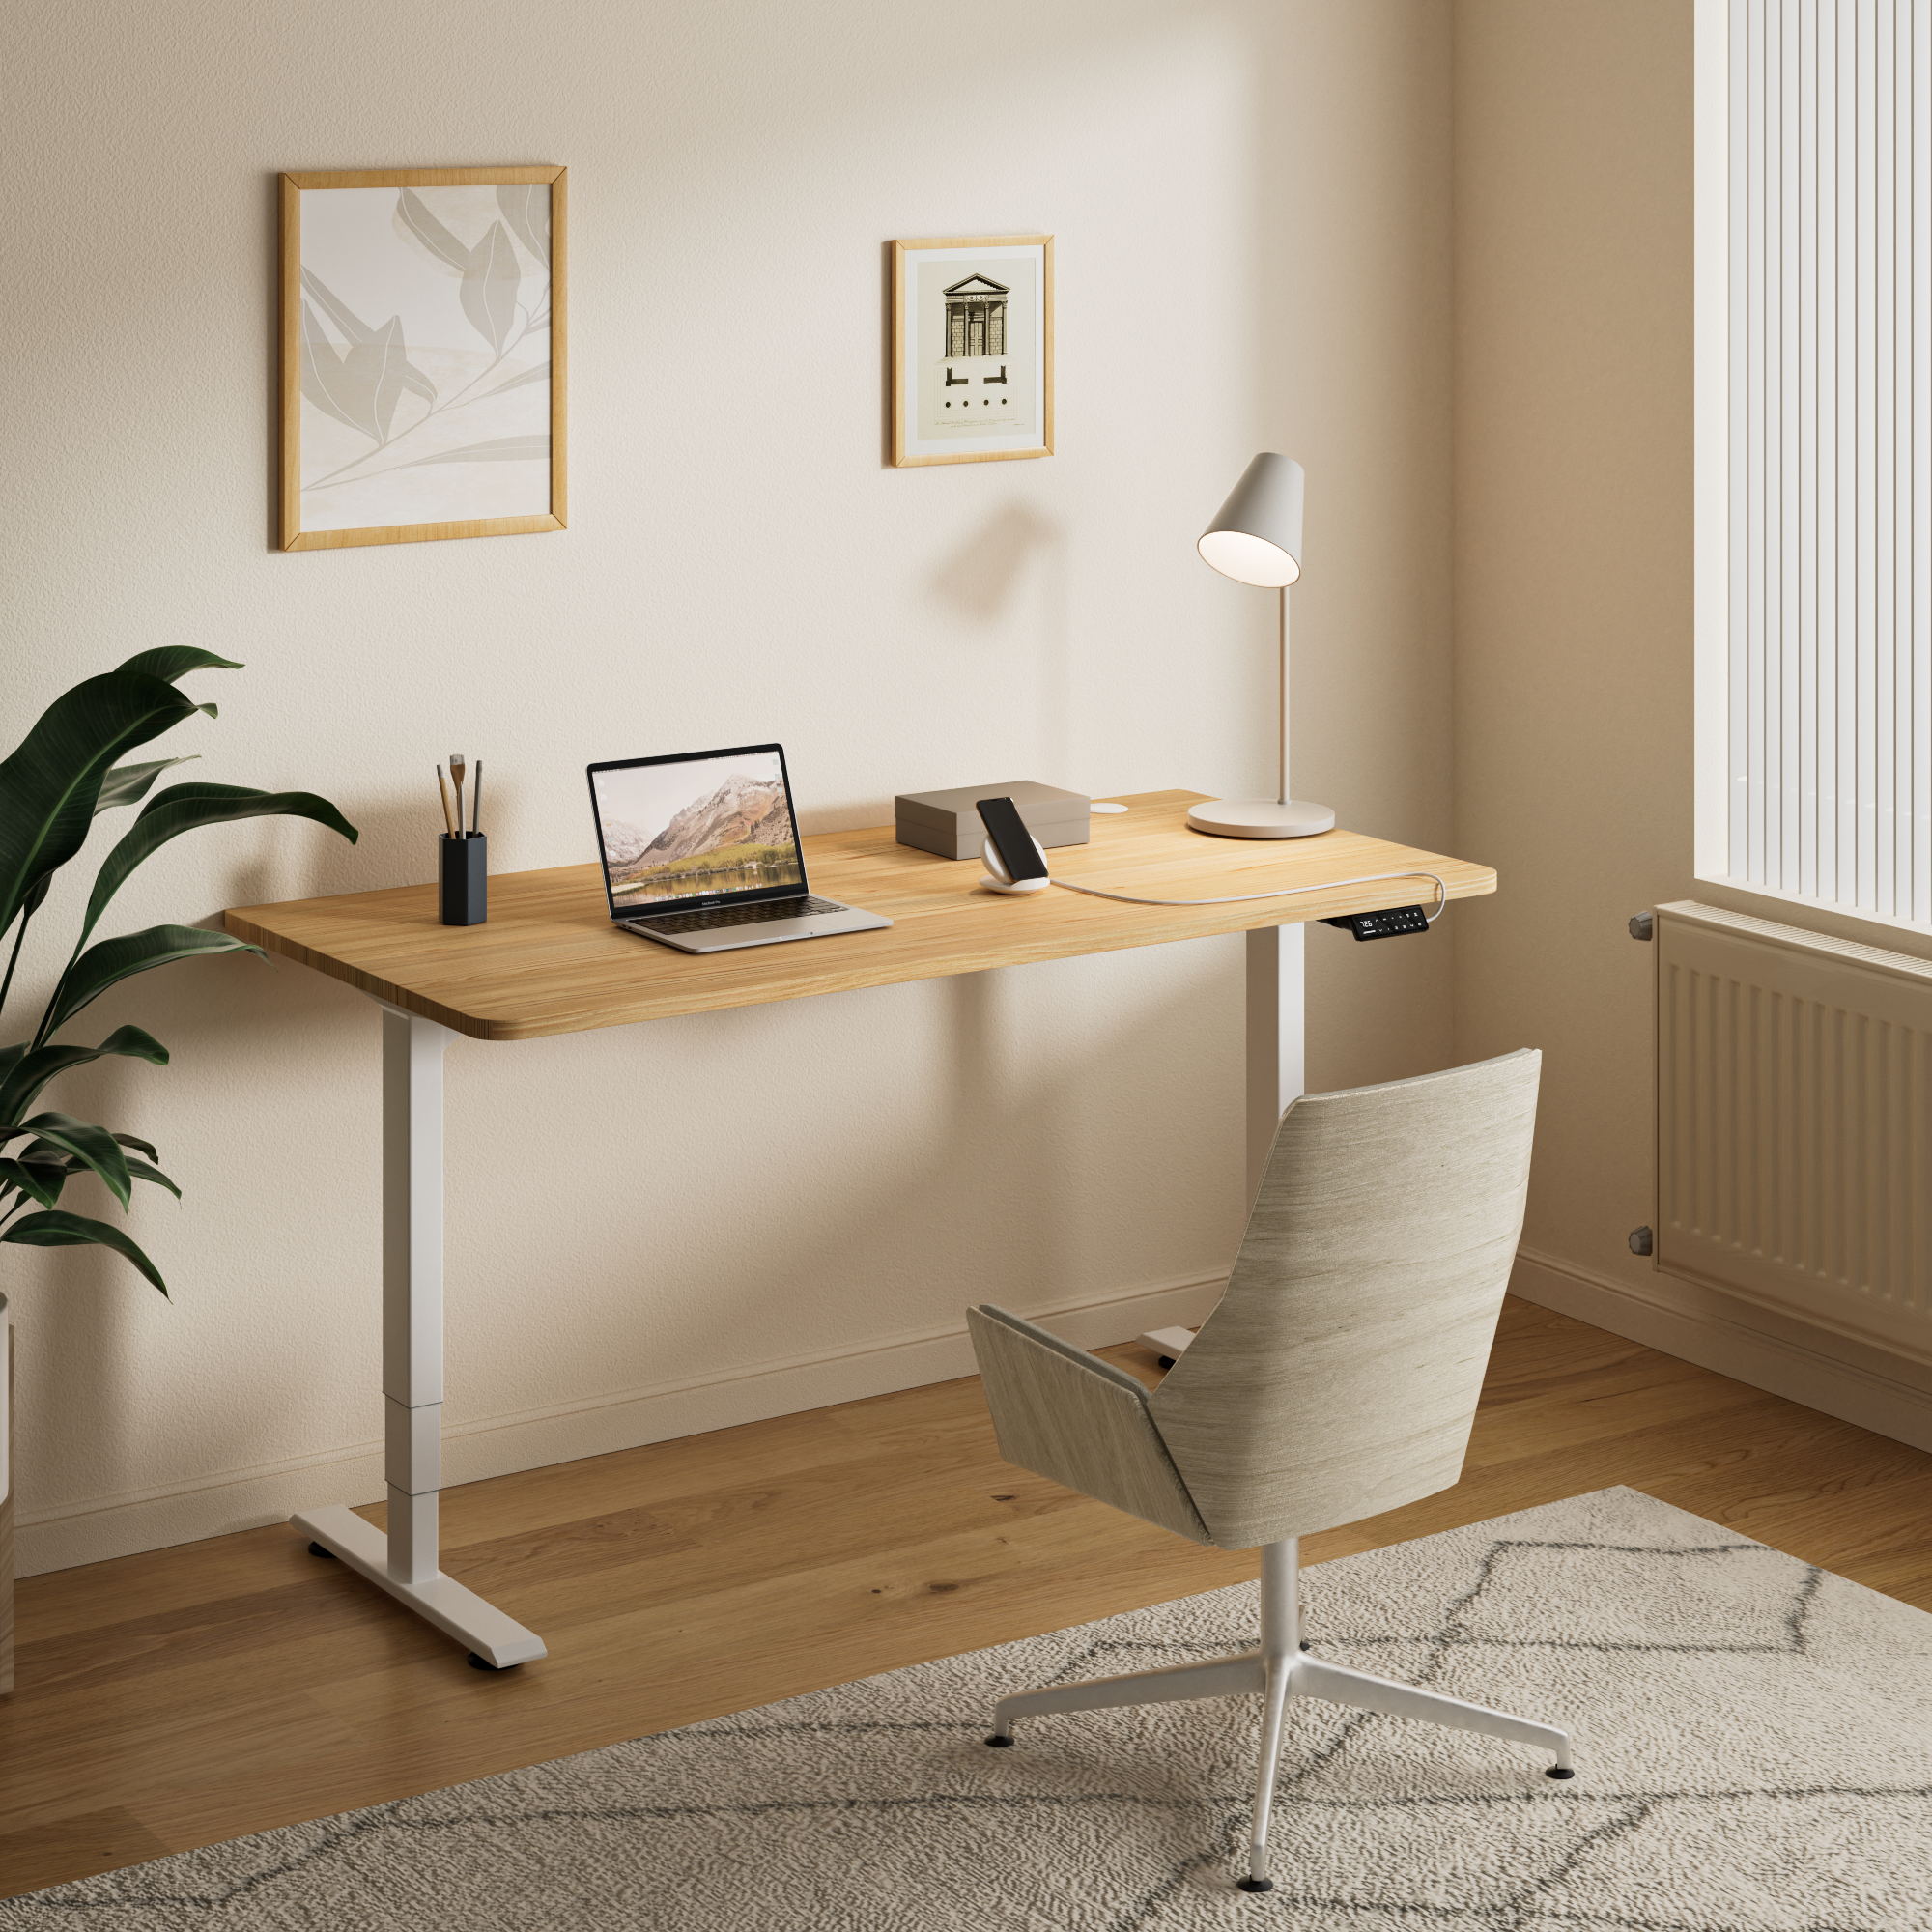 Maidesite escritorio eléctrico regulable en altura para la oficina en casa la gente trabaja con él en la sala de estar